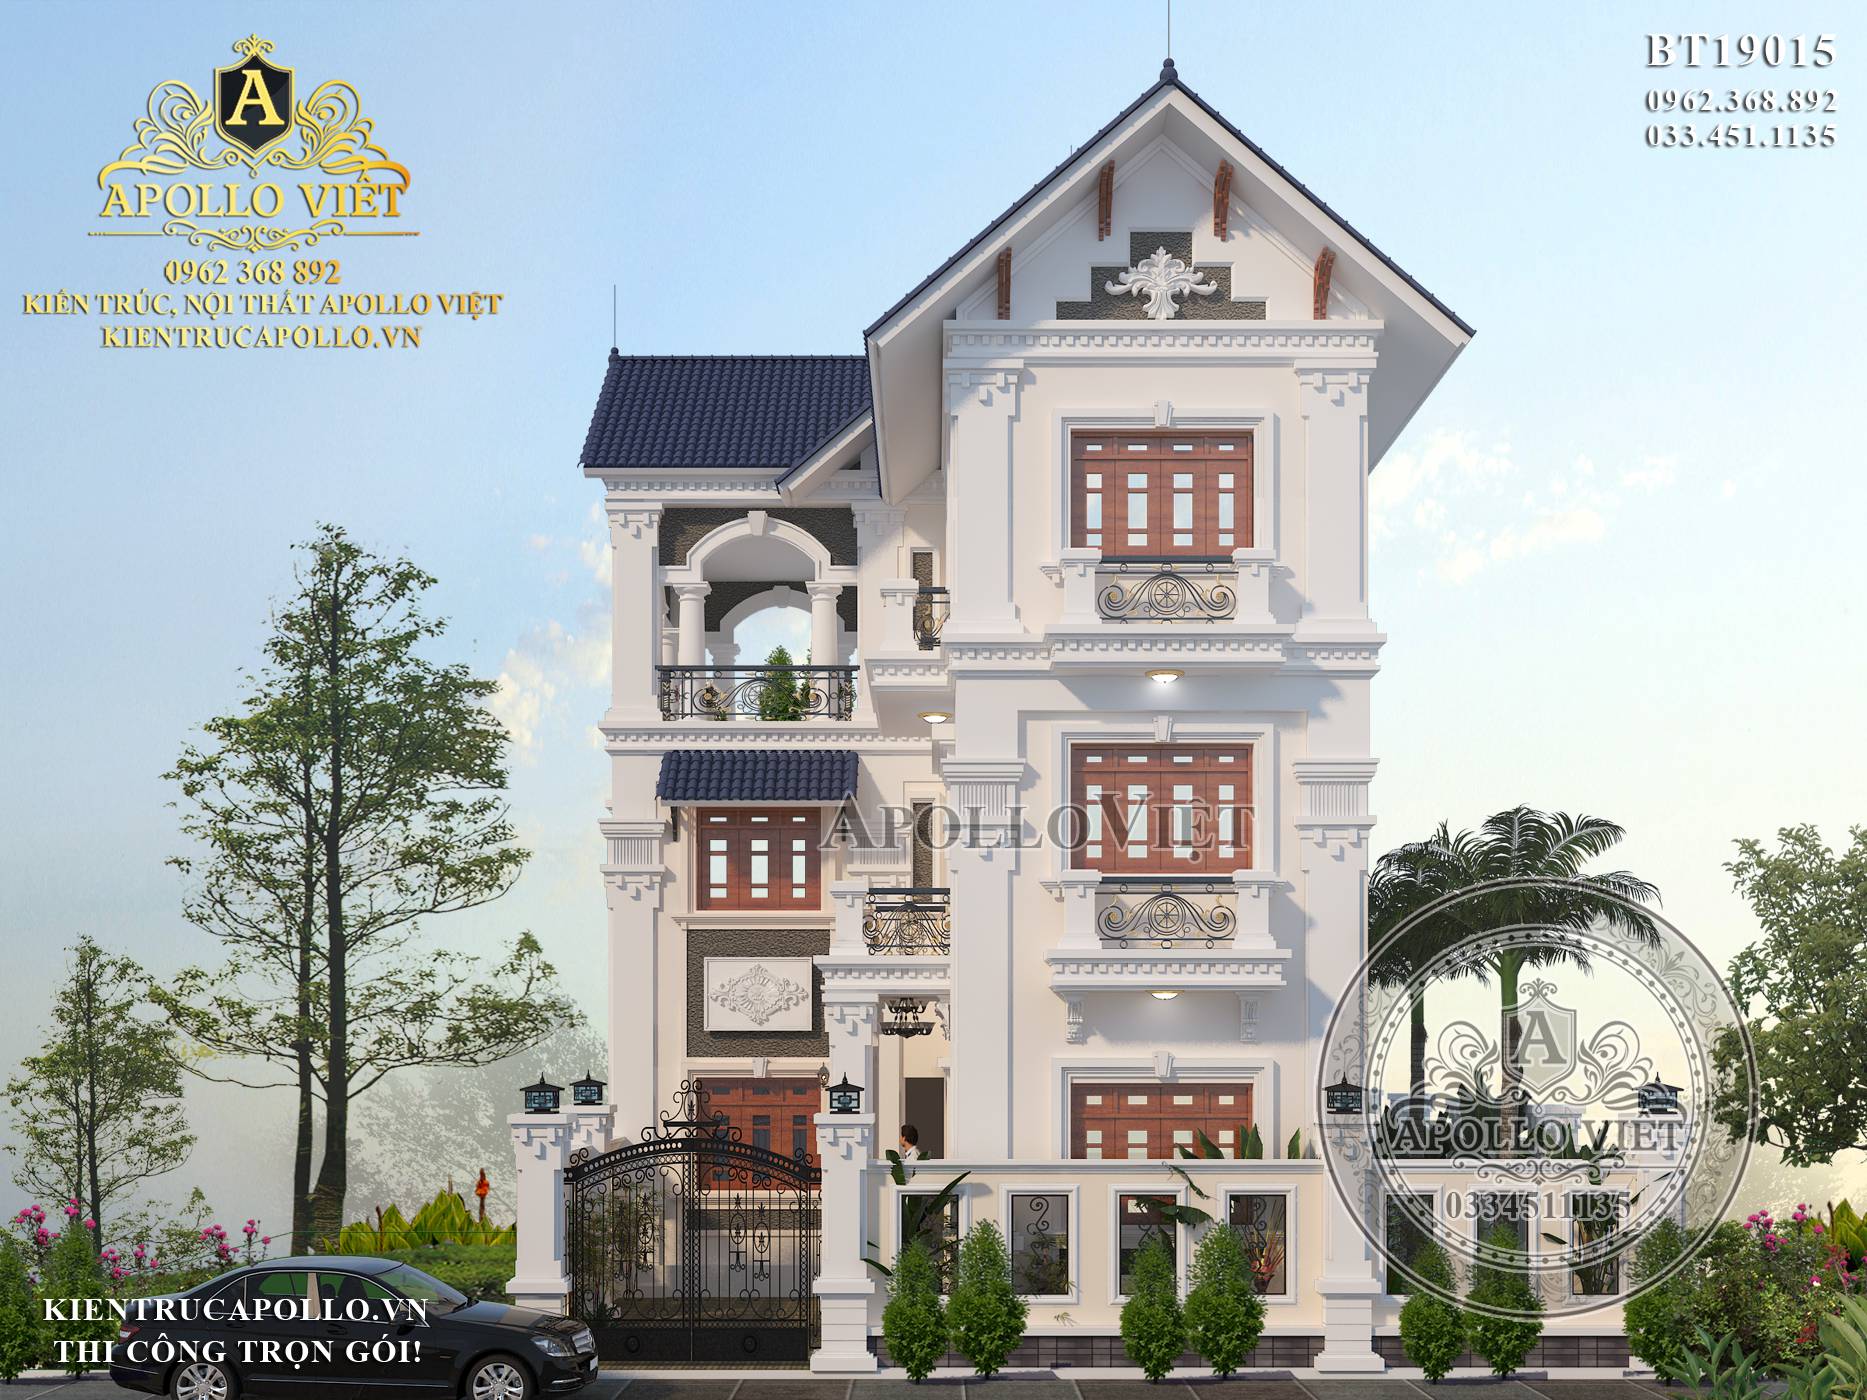 Mẫu biệt thự mini hiện đại 3 tầng đẹp đắm say lòng người | Phan Kiến Phát  Co.,Ltd